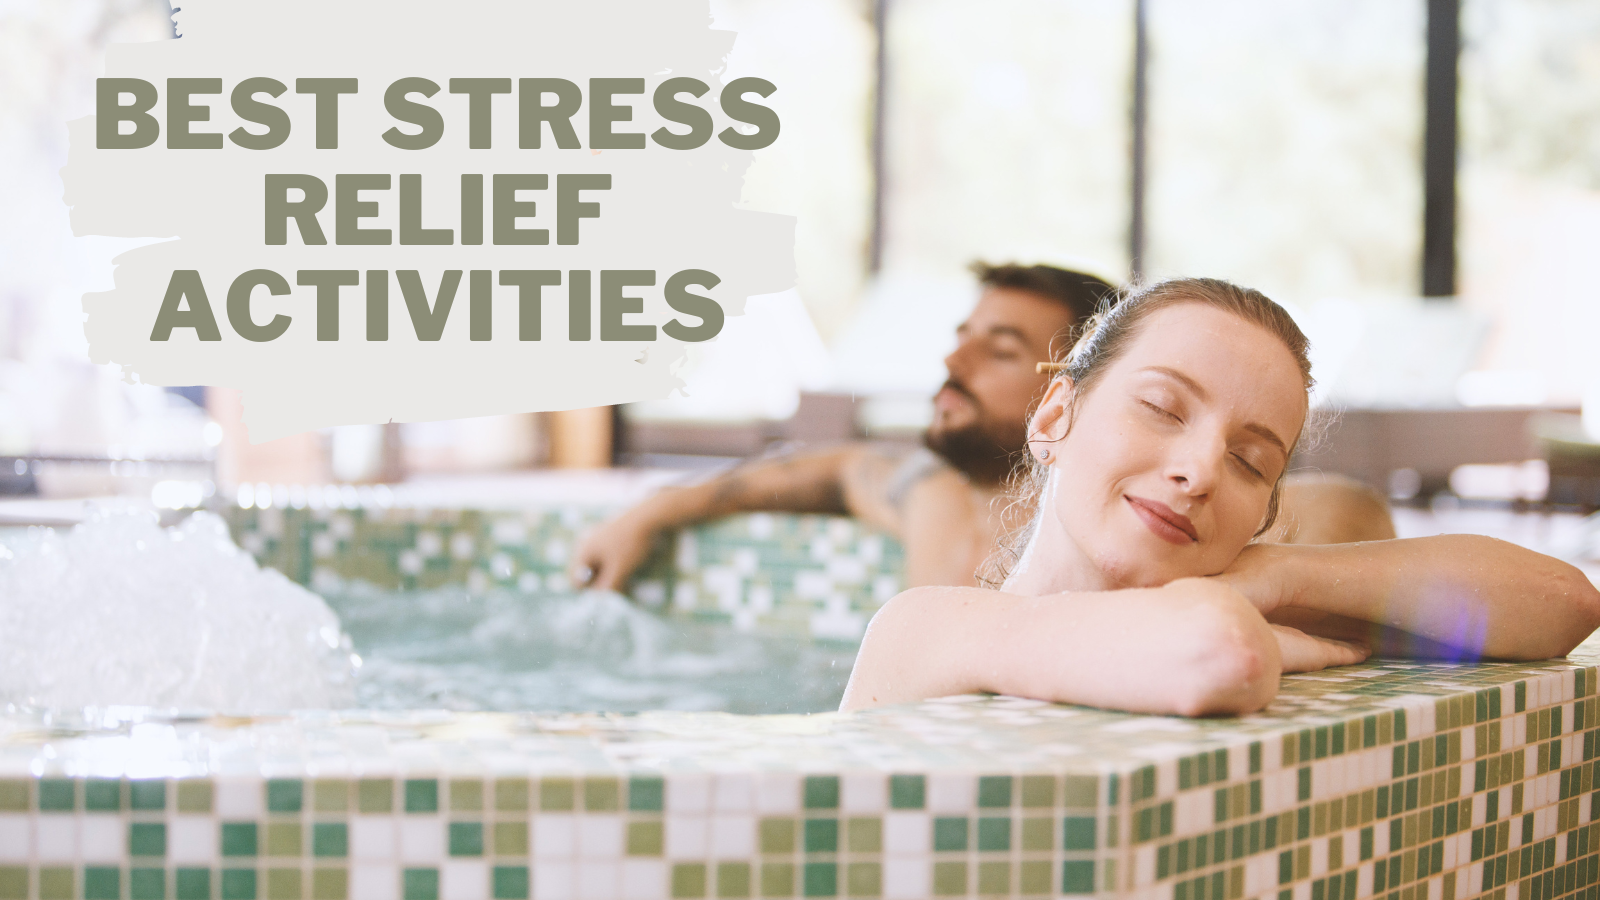 8 Best Stress Relief Activities